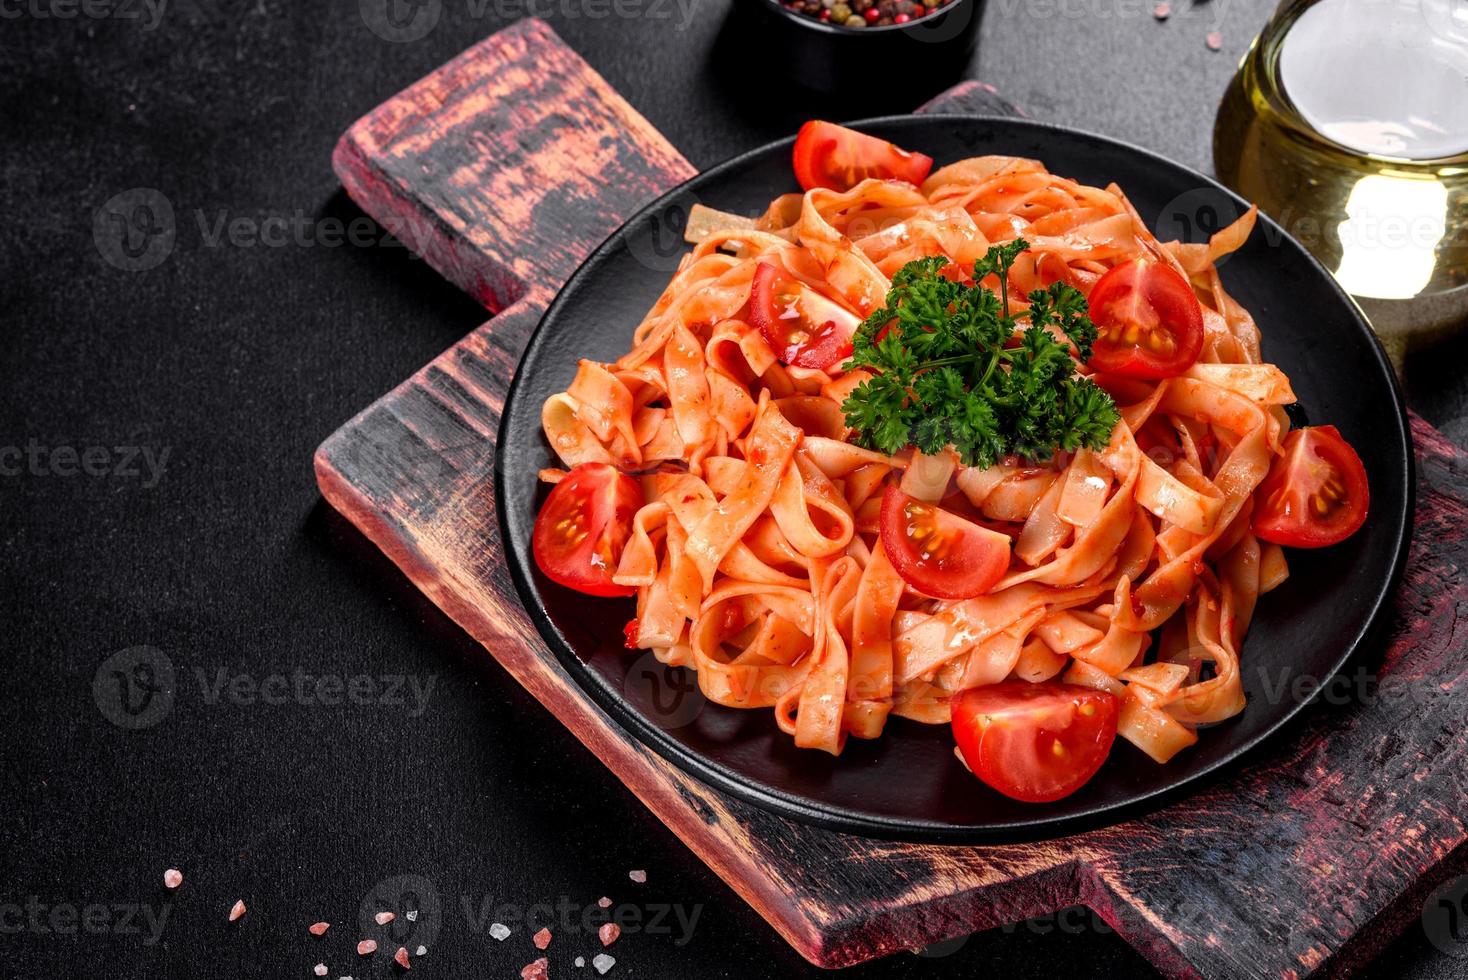 läcker färsk pasta med tomatsås med kryddor och örter på en mörk bakgrund foto